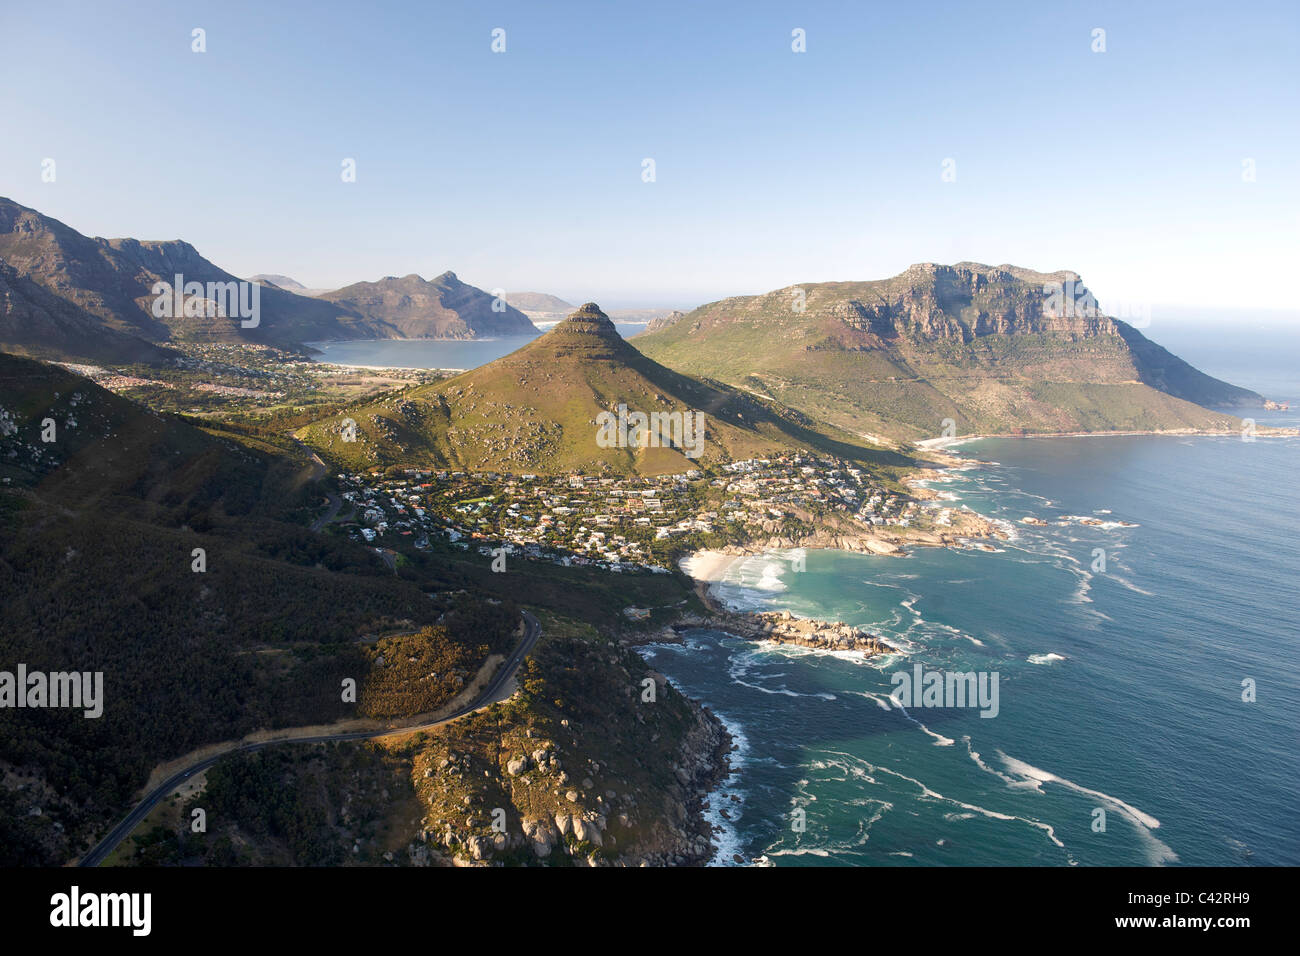 Vista aerea della Città del Capo del litorale atlantico che mostra i sobborghi di Llundudno (centro) e Hout Bay (sfondo). Foto Stock